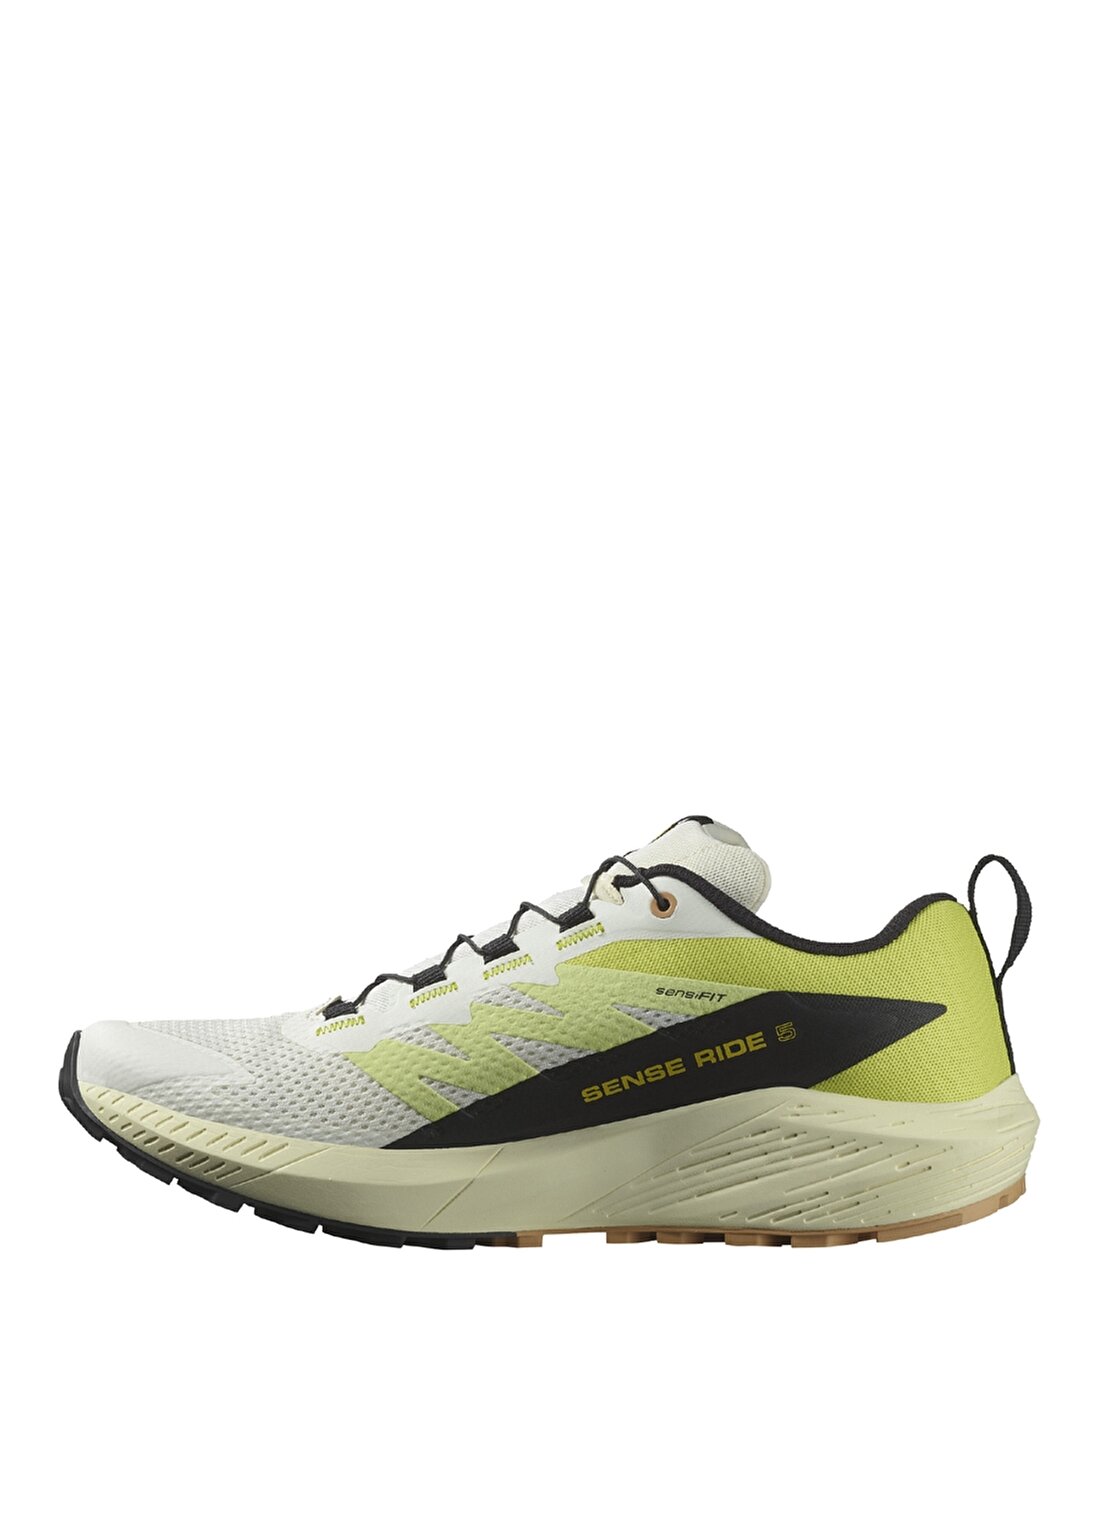 Salomon Beyaz - Sarı Erkek Koşu Ayakkabısı L47458400_SENSE RIDE 5